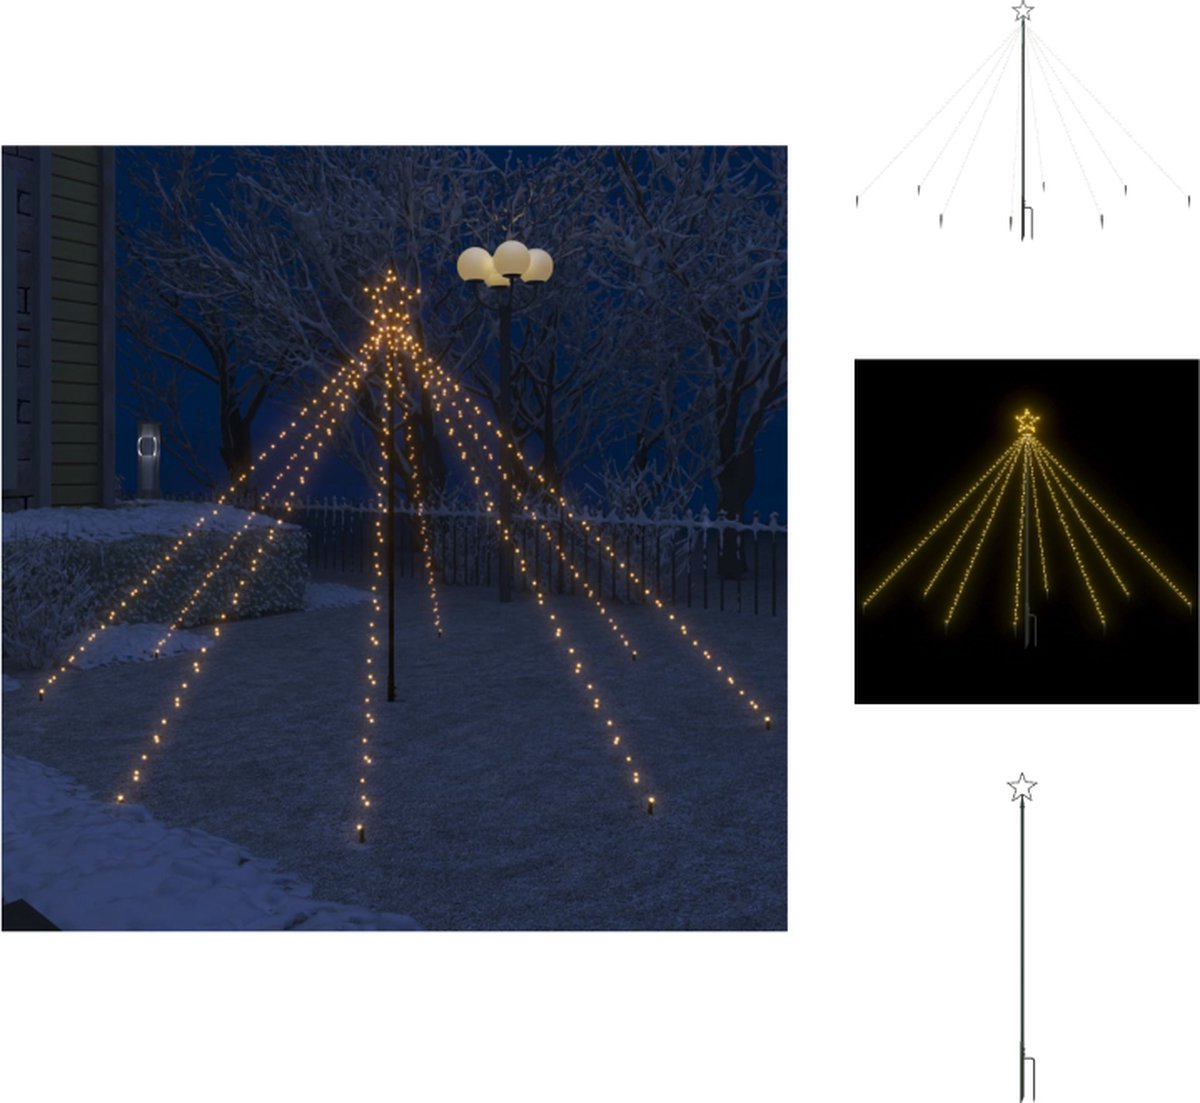 vidaXL Kerstboomverlichting - Watervalontwerp - 400 LEDs - 8 snoeren - Warmwit - IP44 - 2.5m hoog - 10m stroomsnoer - Energiebesparend - vidaXL - Decoratieve kerstboom